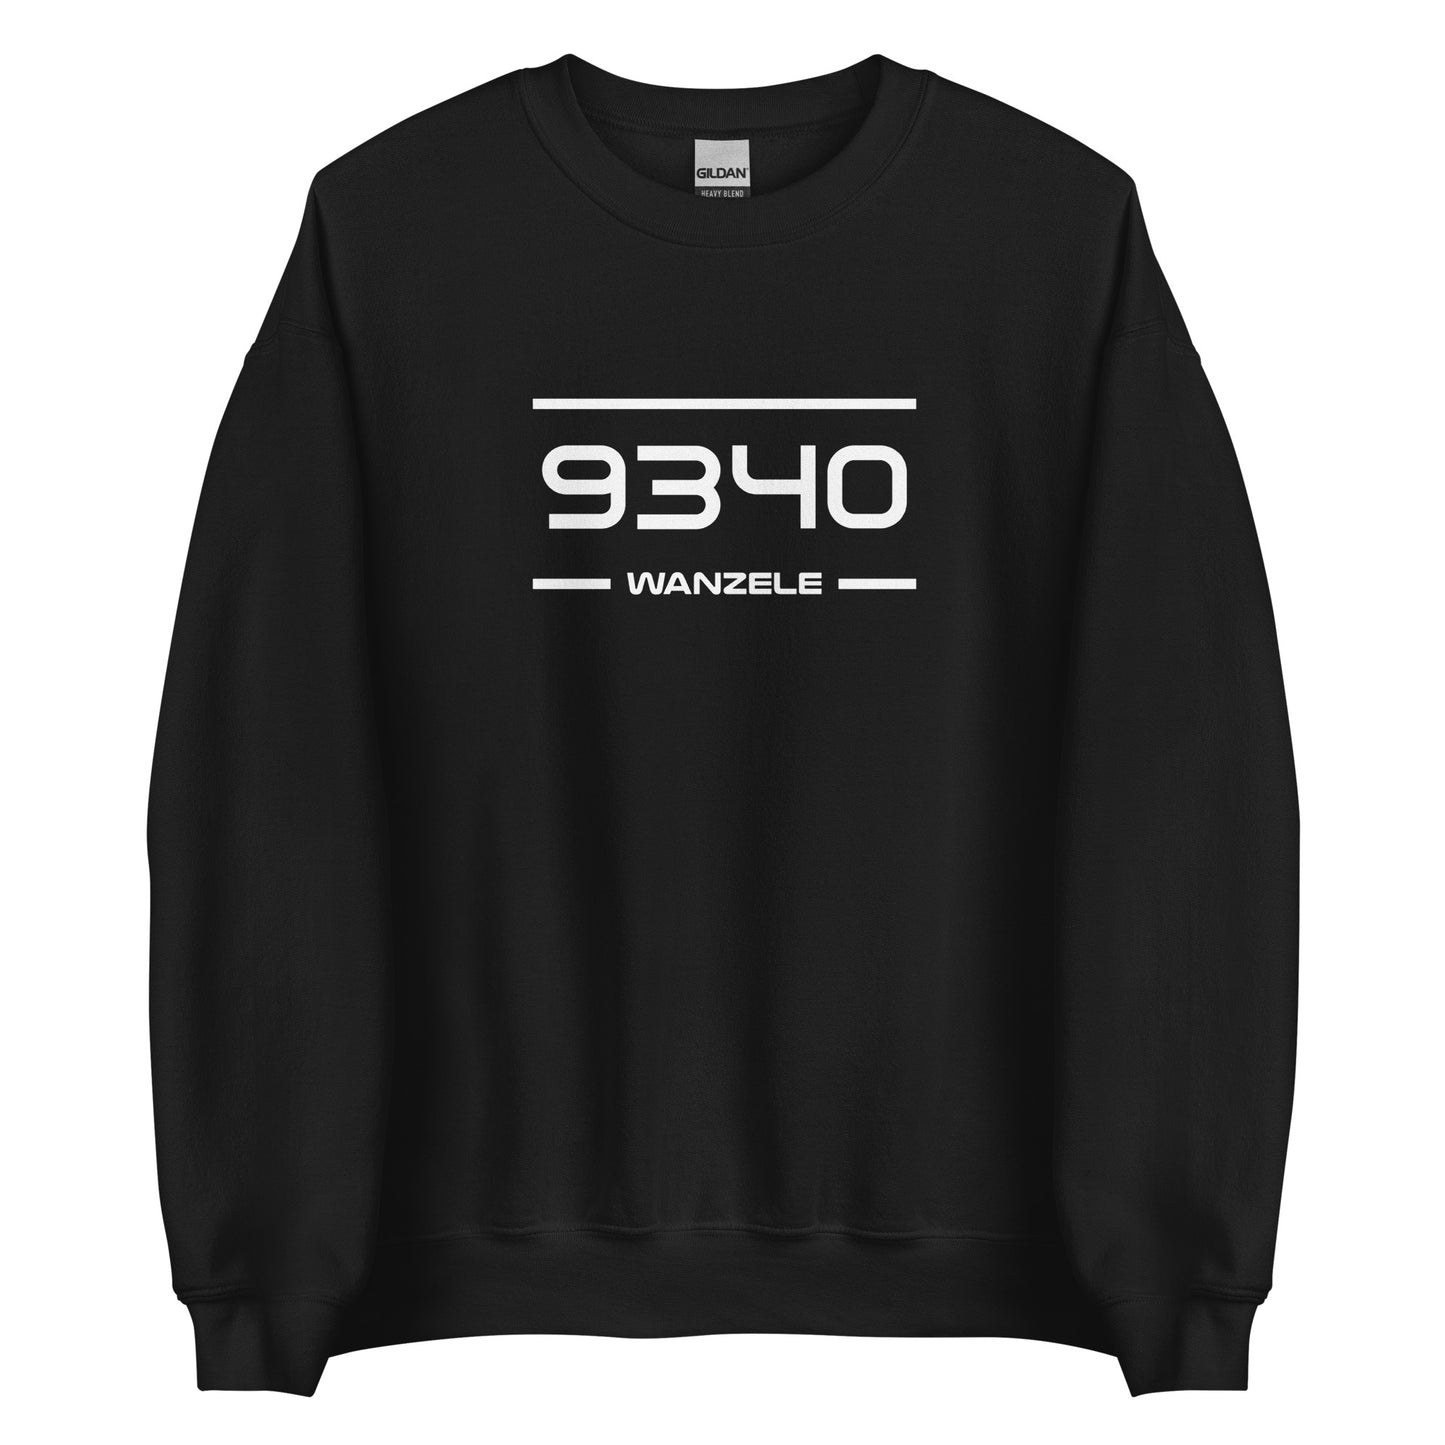 Sweater - 9340 - Wanzele (M/V)